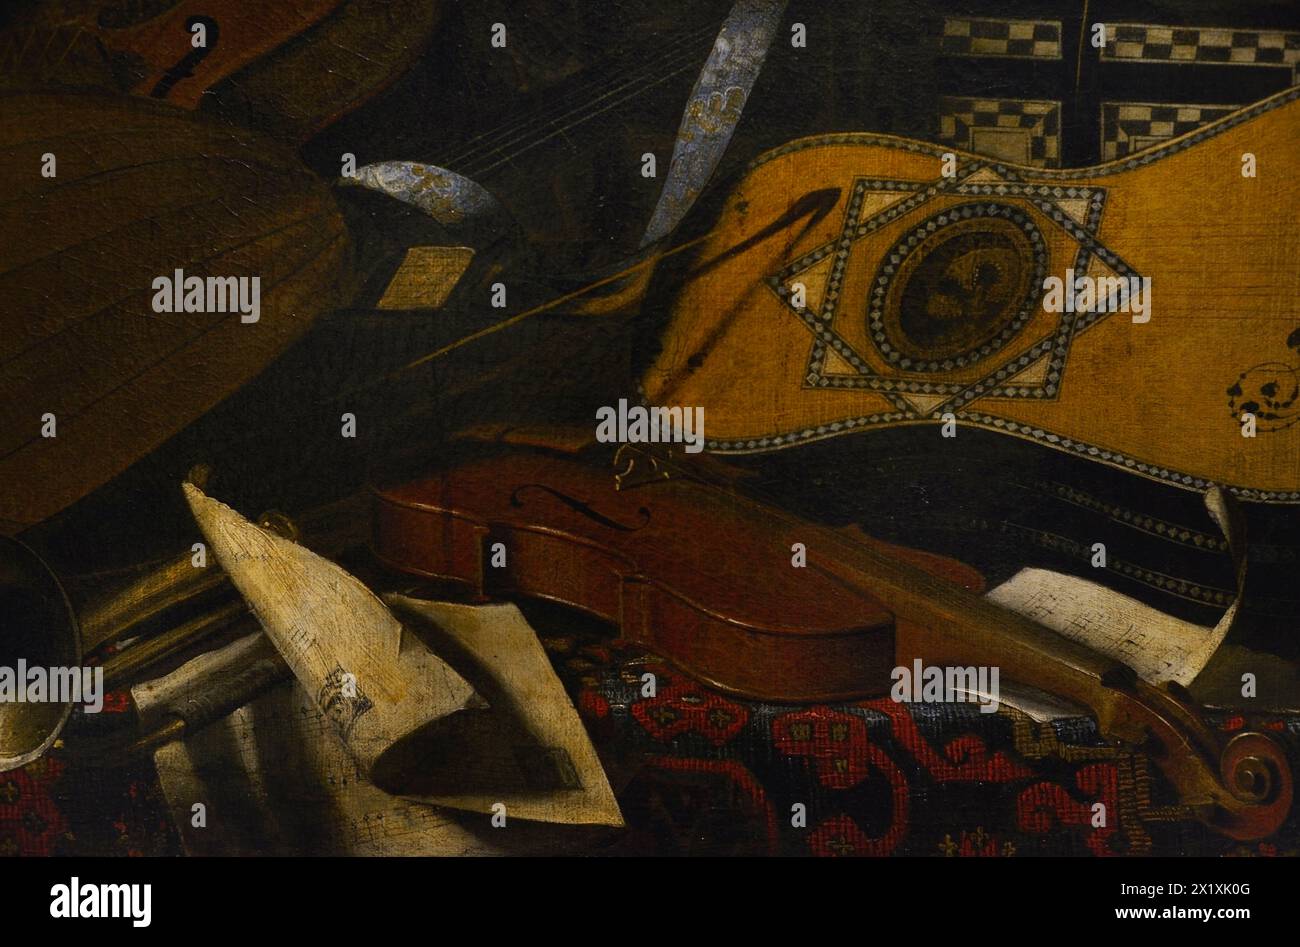 Bartolomeo Bettera (1639-1688). Italienischer Maler. Stillleben mit Musikinstrumenten. Öl auf Leinwand. Details. Ala Ponzone Civic Museum. Cremona. Italien. Stockfoto